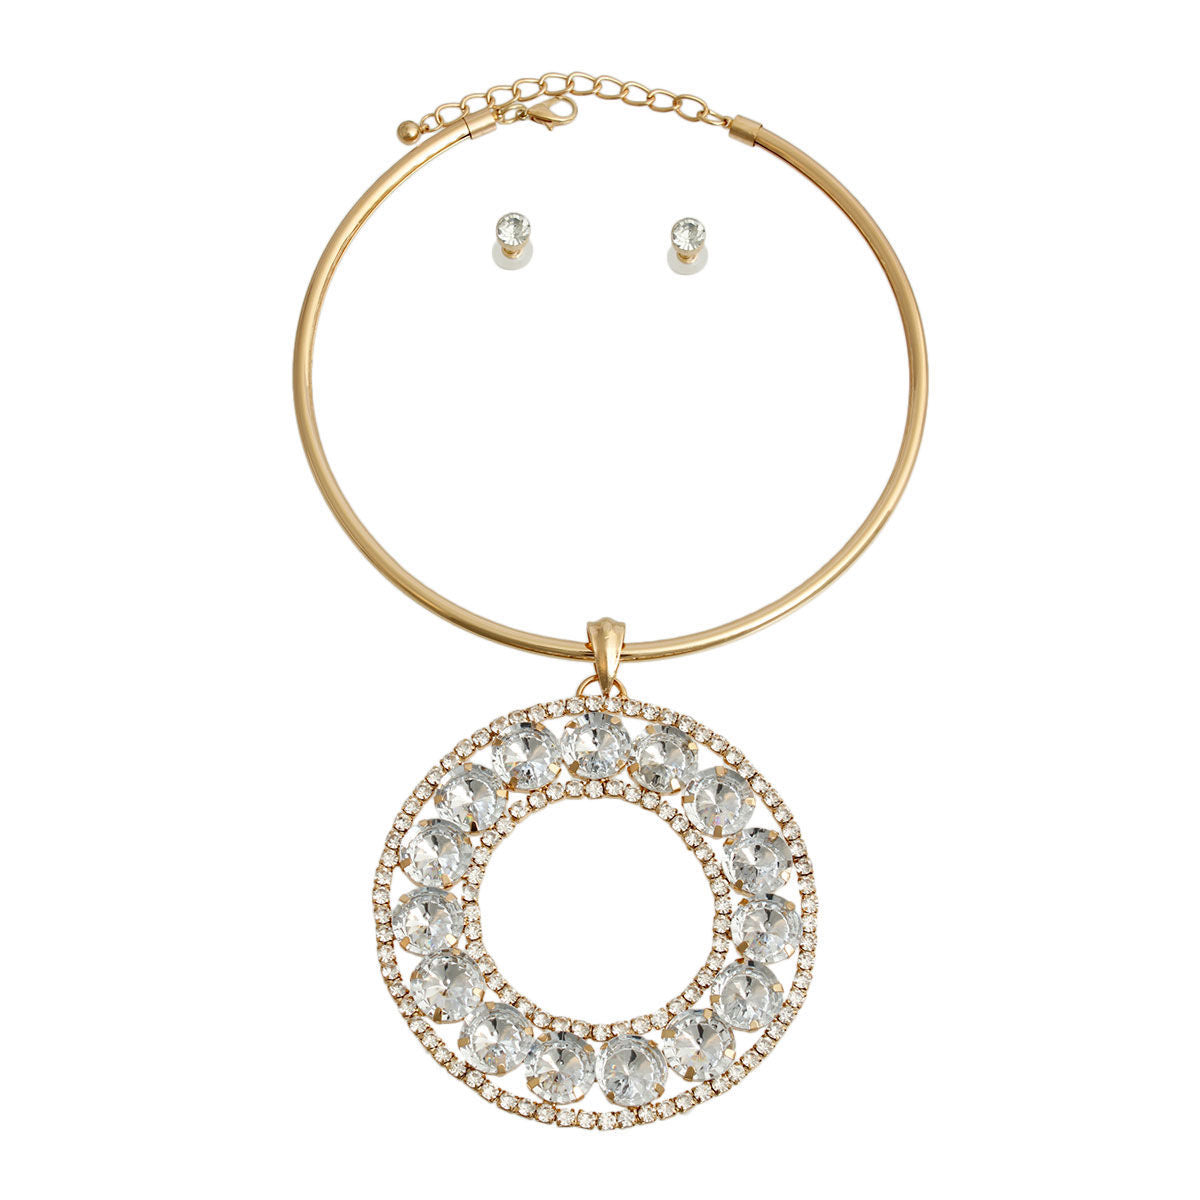 Rigid Gold Halo Circle Necklace